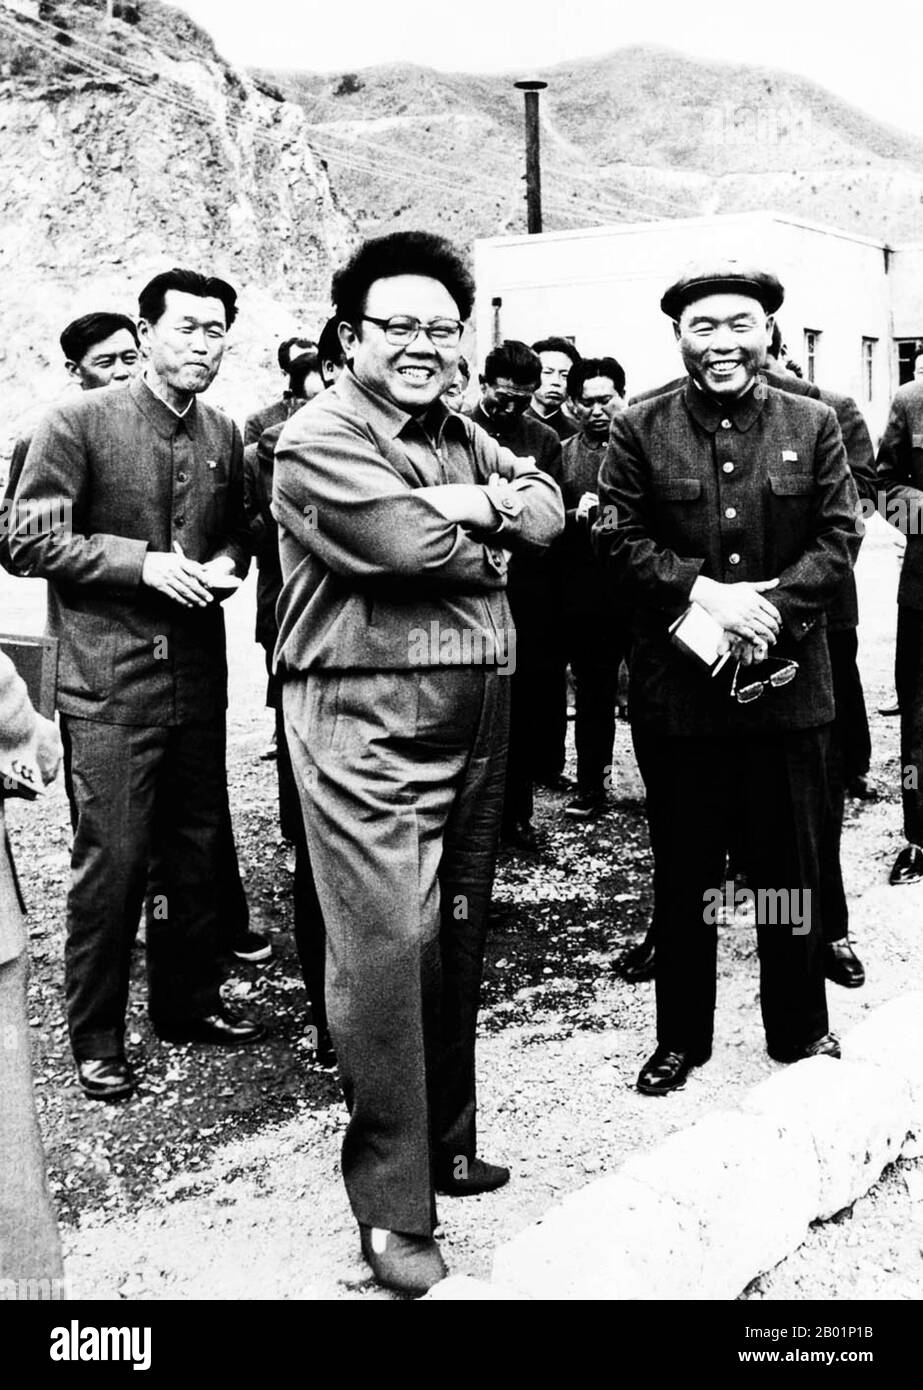 Korea: Nordkoreanischer Führer Kim Jong Il (16. Februar 1941/1942 bis 17. Dezember 2011) auf einer Inspektionsreise in einer Mine, zwei Jahre bevor er 1992 seinen Vater Kim Il Sung als oberster Führer ablöste. Kim Jong-il war von 1994 bis 2011 der oberste Führer Nordkoreas (DVRK). Er folgte seinem Vater und Gründer der DVRK Kim Il-sung nach dem Tod des Ältesten Kim im 1994. Kim Jong-il war Generalsekretär der Arbeiterpartei Koreas, Vorsitzender der Nationalen Verteidigungskommission Nordkoreas und Oberbefehlshaber der Koreanischen Volksarmee, der viertgrößten ständigen Armee weltweit. Stockfoto